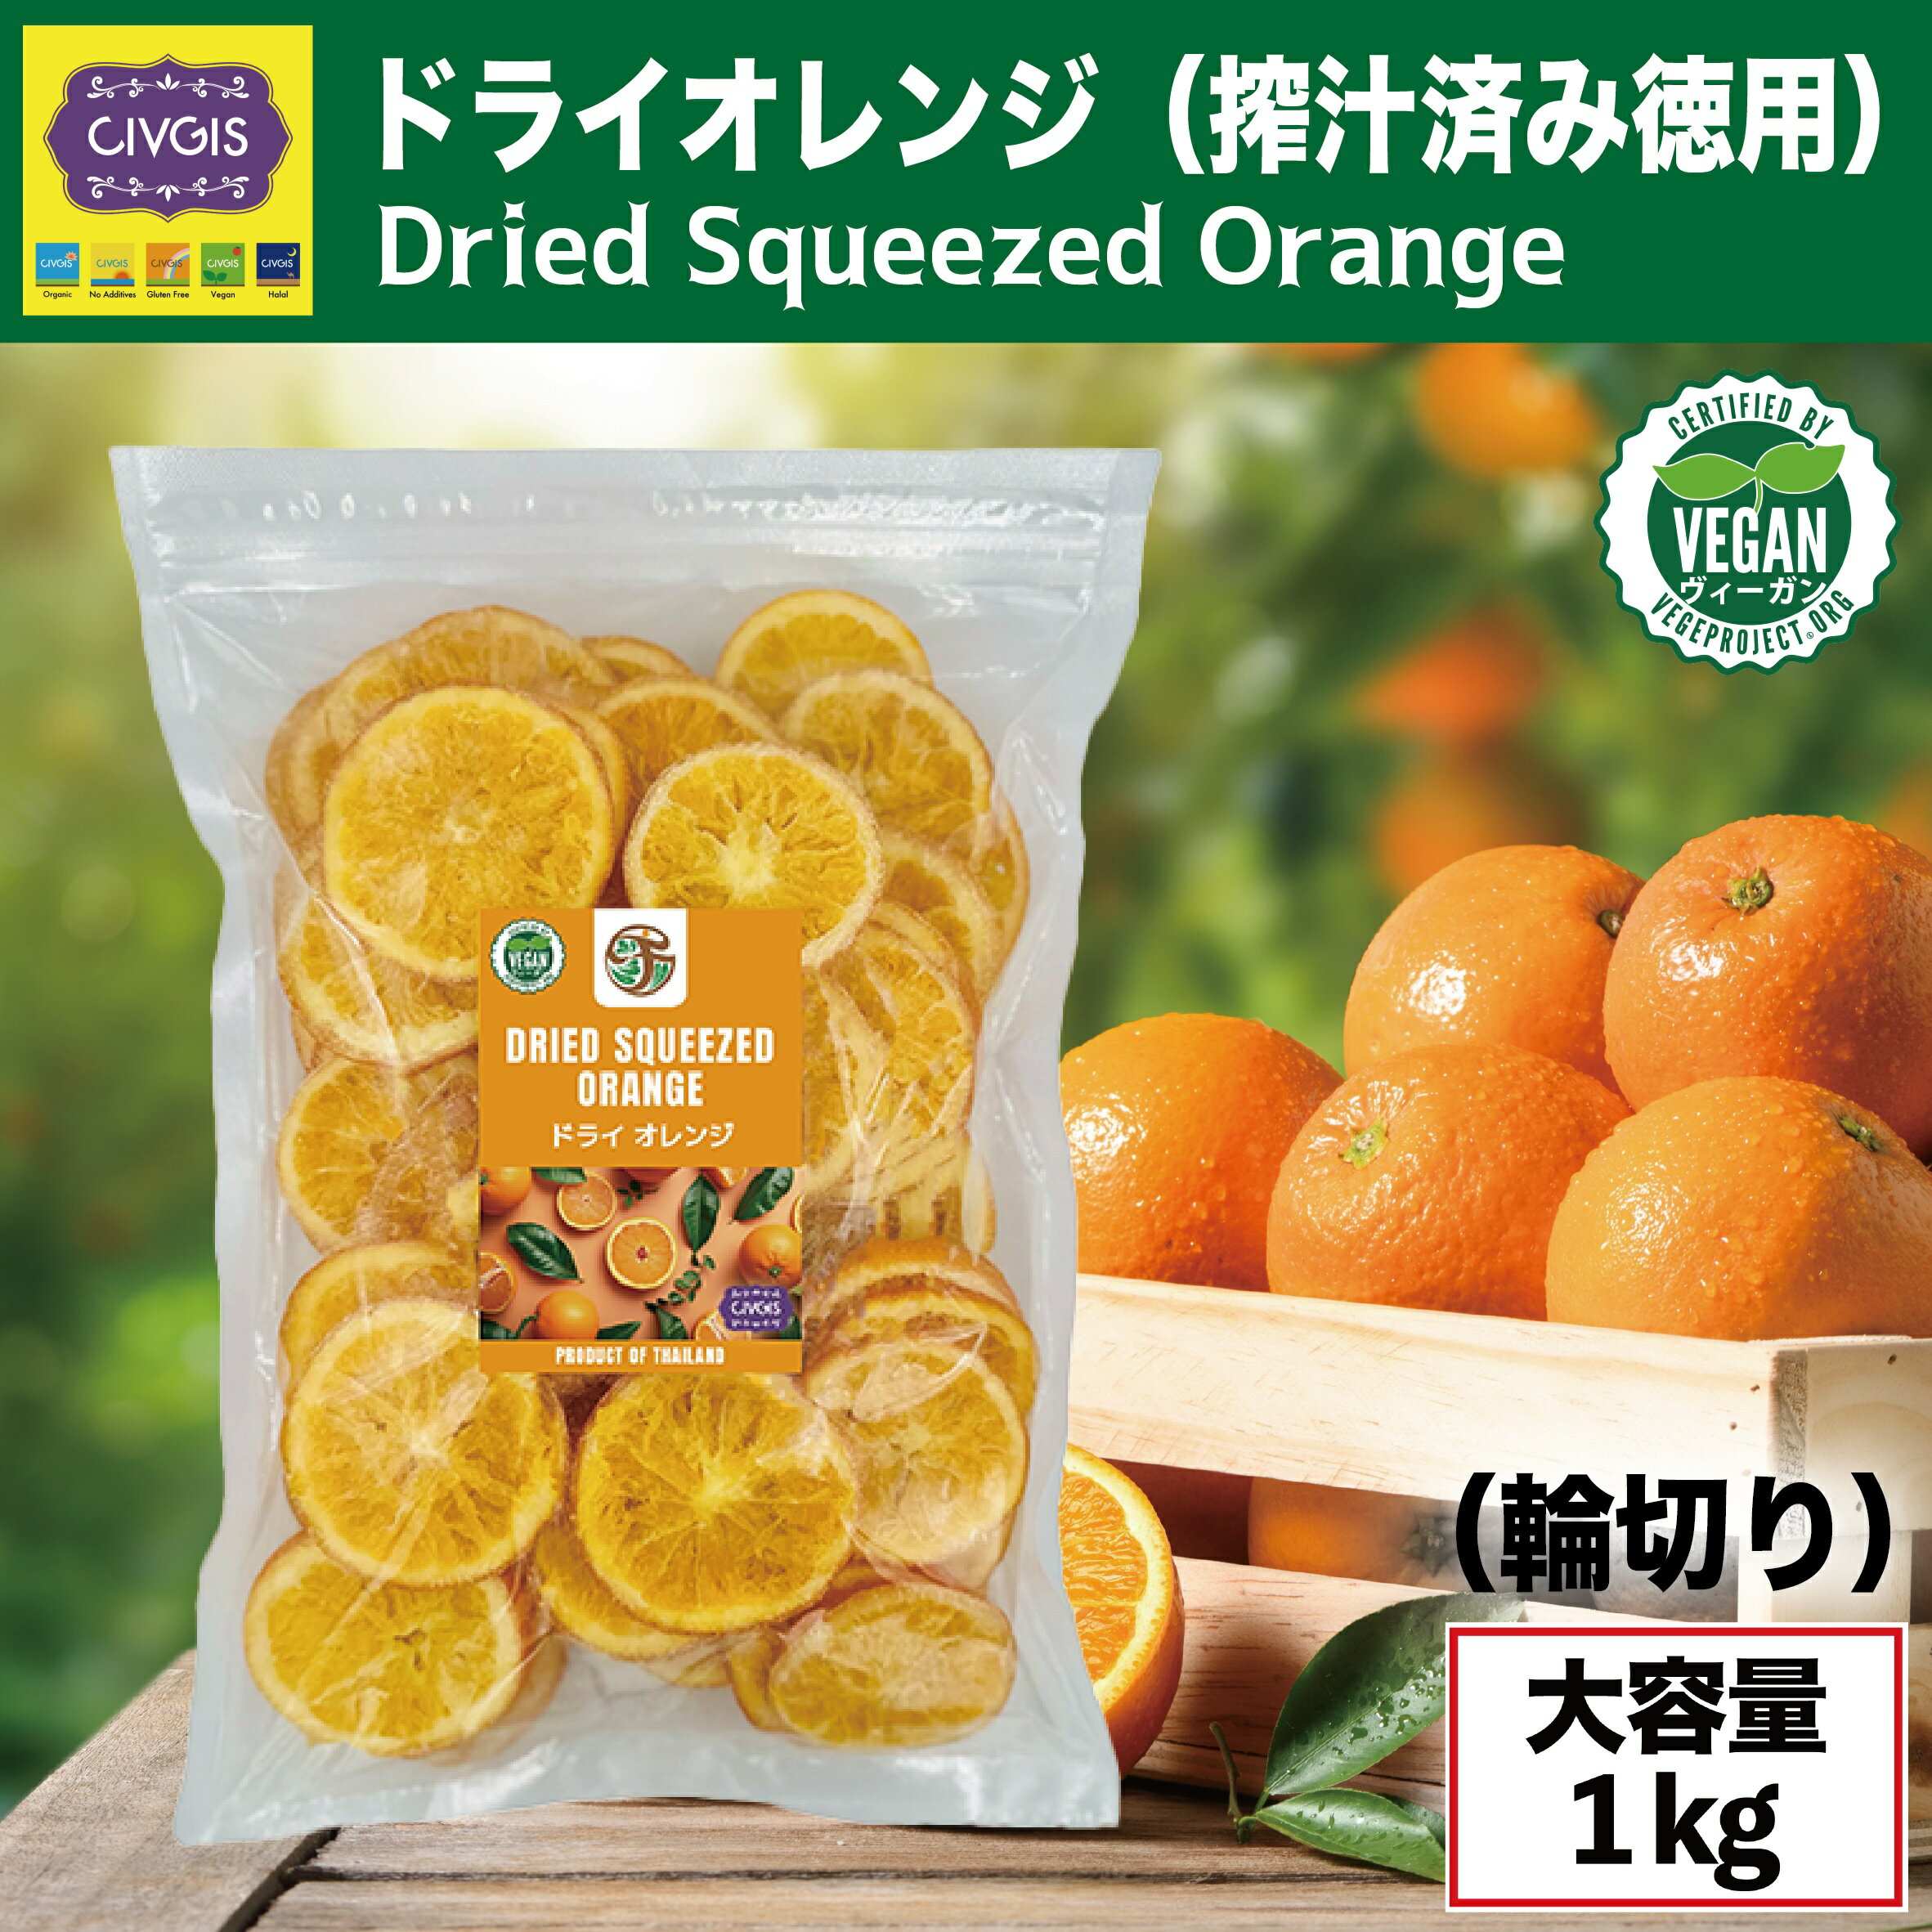 【★爆爆セール★ポイント20倍★】ドライオレンジ 【大容量1kg】 搾汁済み 低コストタイプ Dried Squeezed Orange 1kg